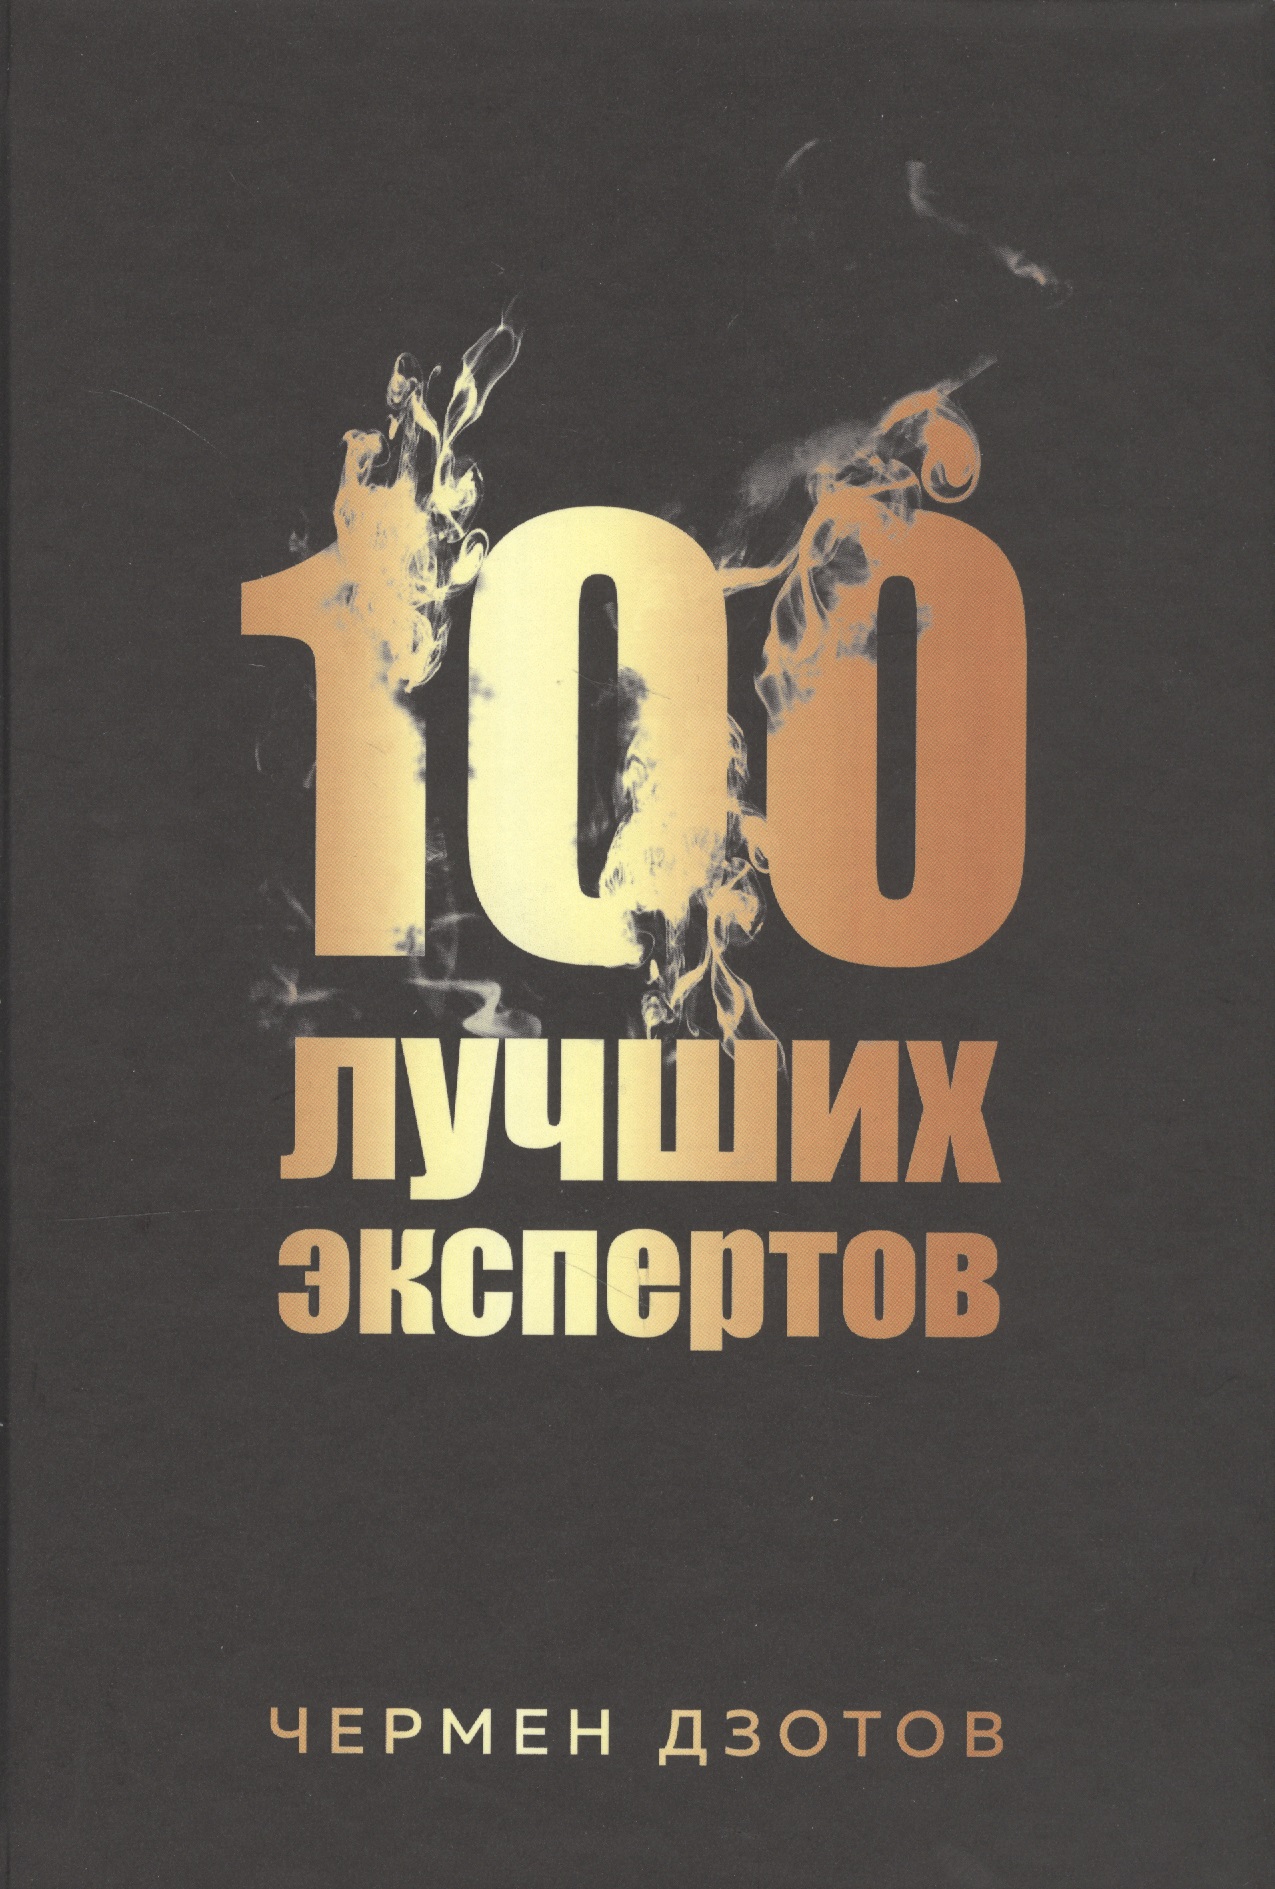 Дзотов Чермен - 100 лучших экспертов